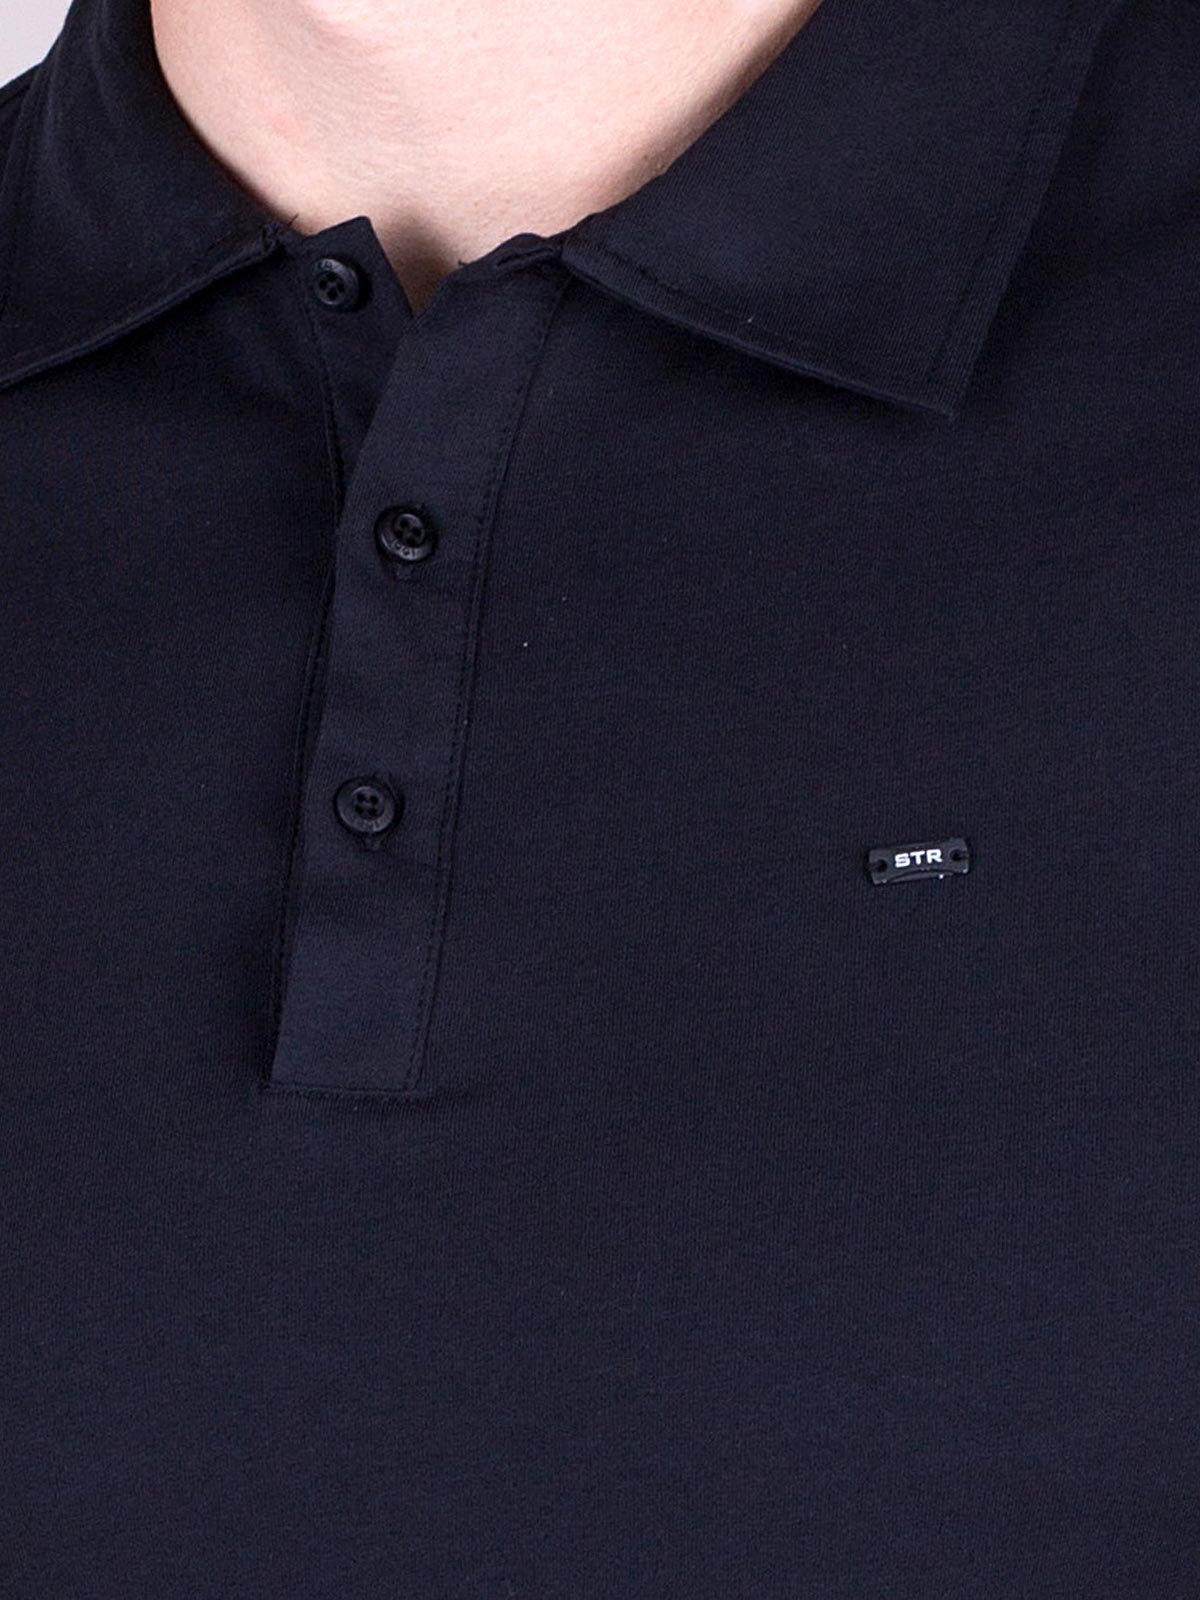 Μπλούζα σε μαύρο χρώμα με λογότυπο στο - 94379 € 12.37 img4